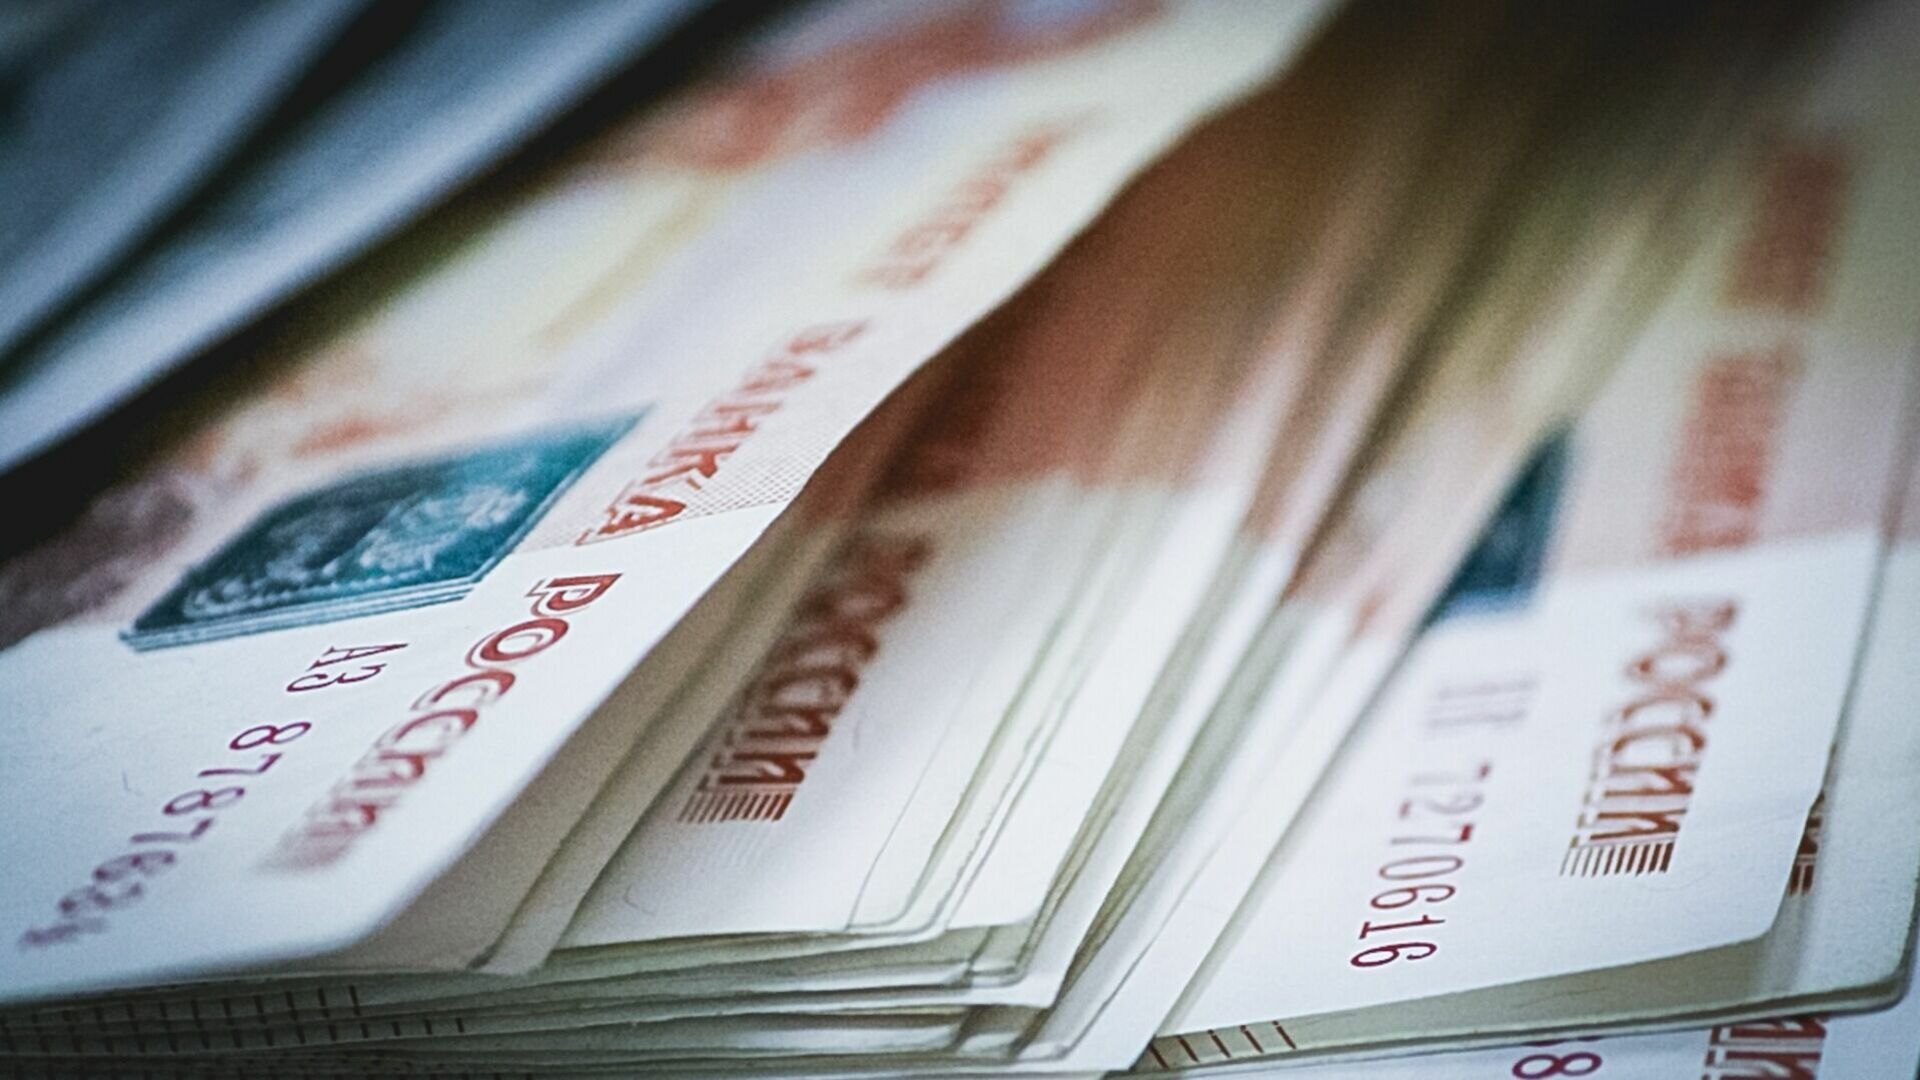 Итоги дня в Тагиле: в бюджет внесут изменения, а жительница отдала мошенникам 4 млн